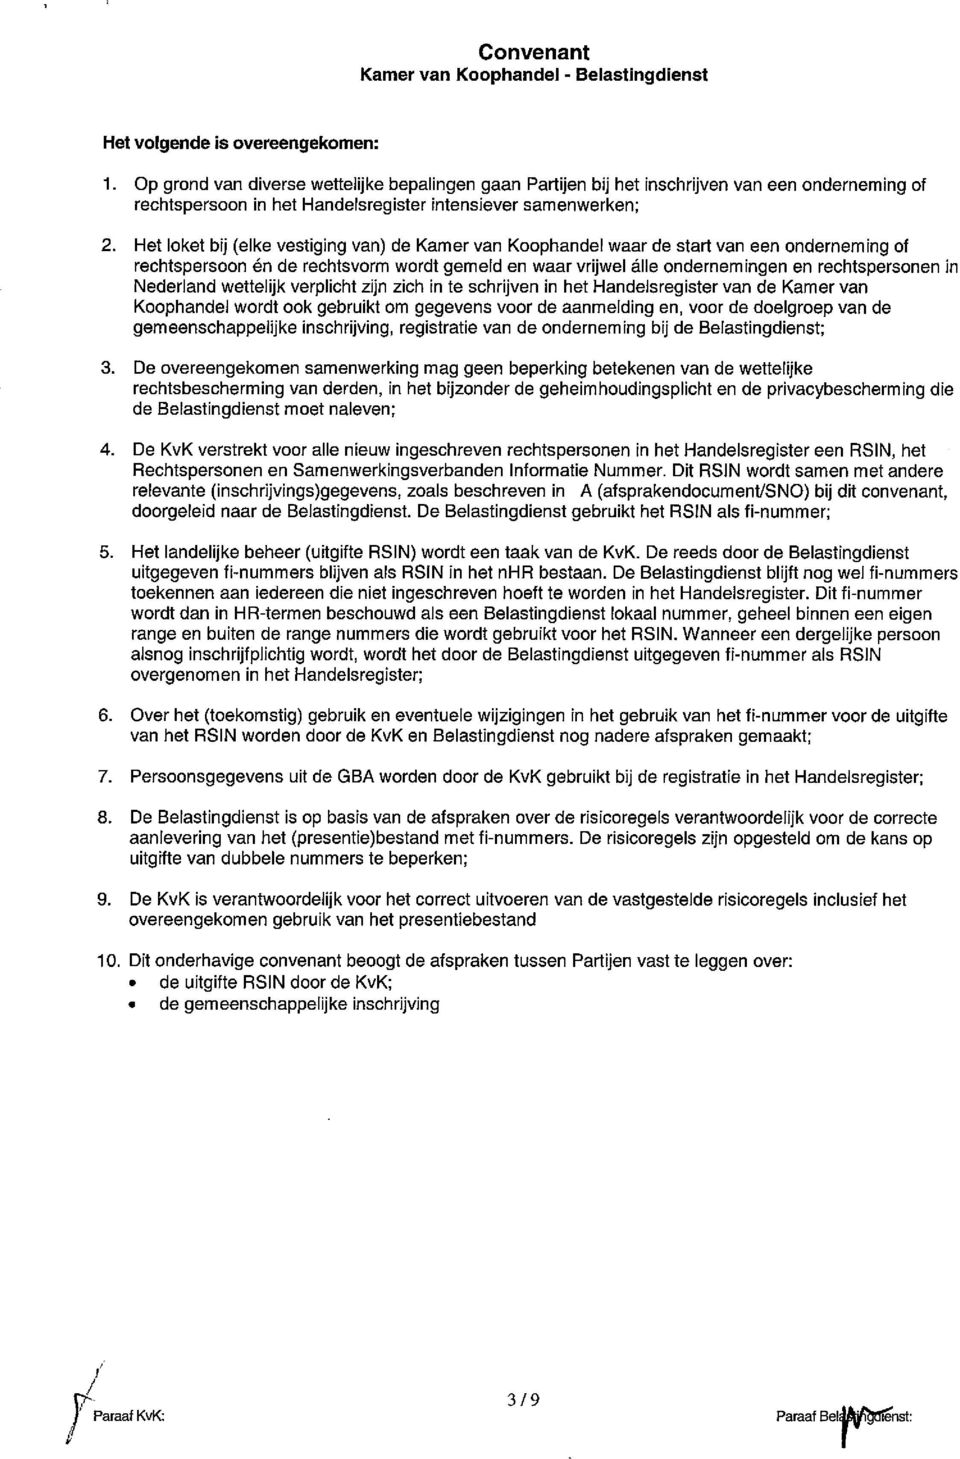 Nederland wettelijk verplicht zijn zich in te schrijven in het Handelsregister van de Kamer van Koophandel wordt ook gebruikt om gegevens voor de aanmelding en, voor de doelgroep van de